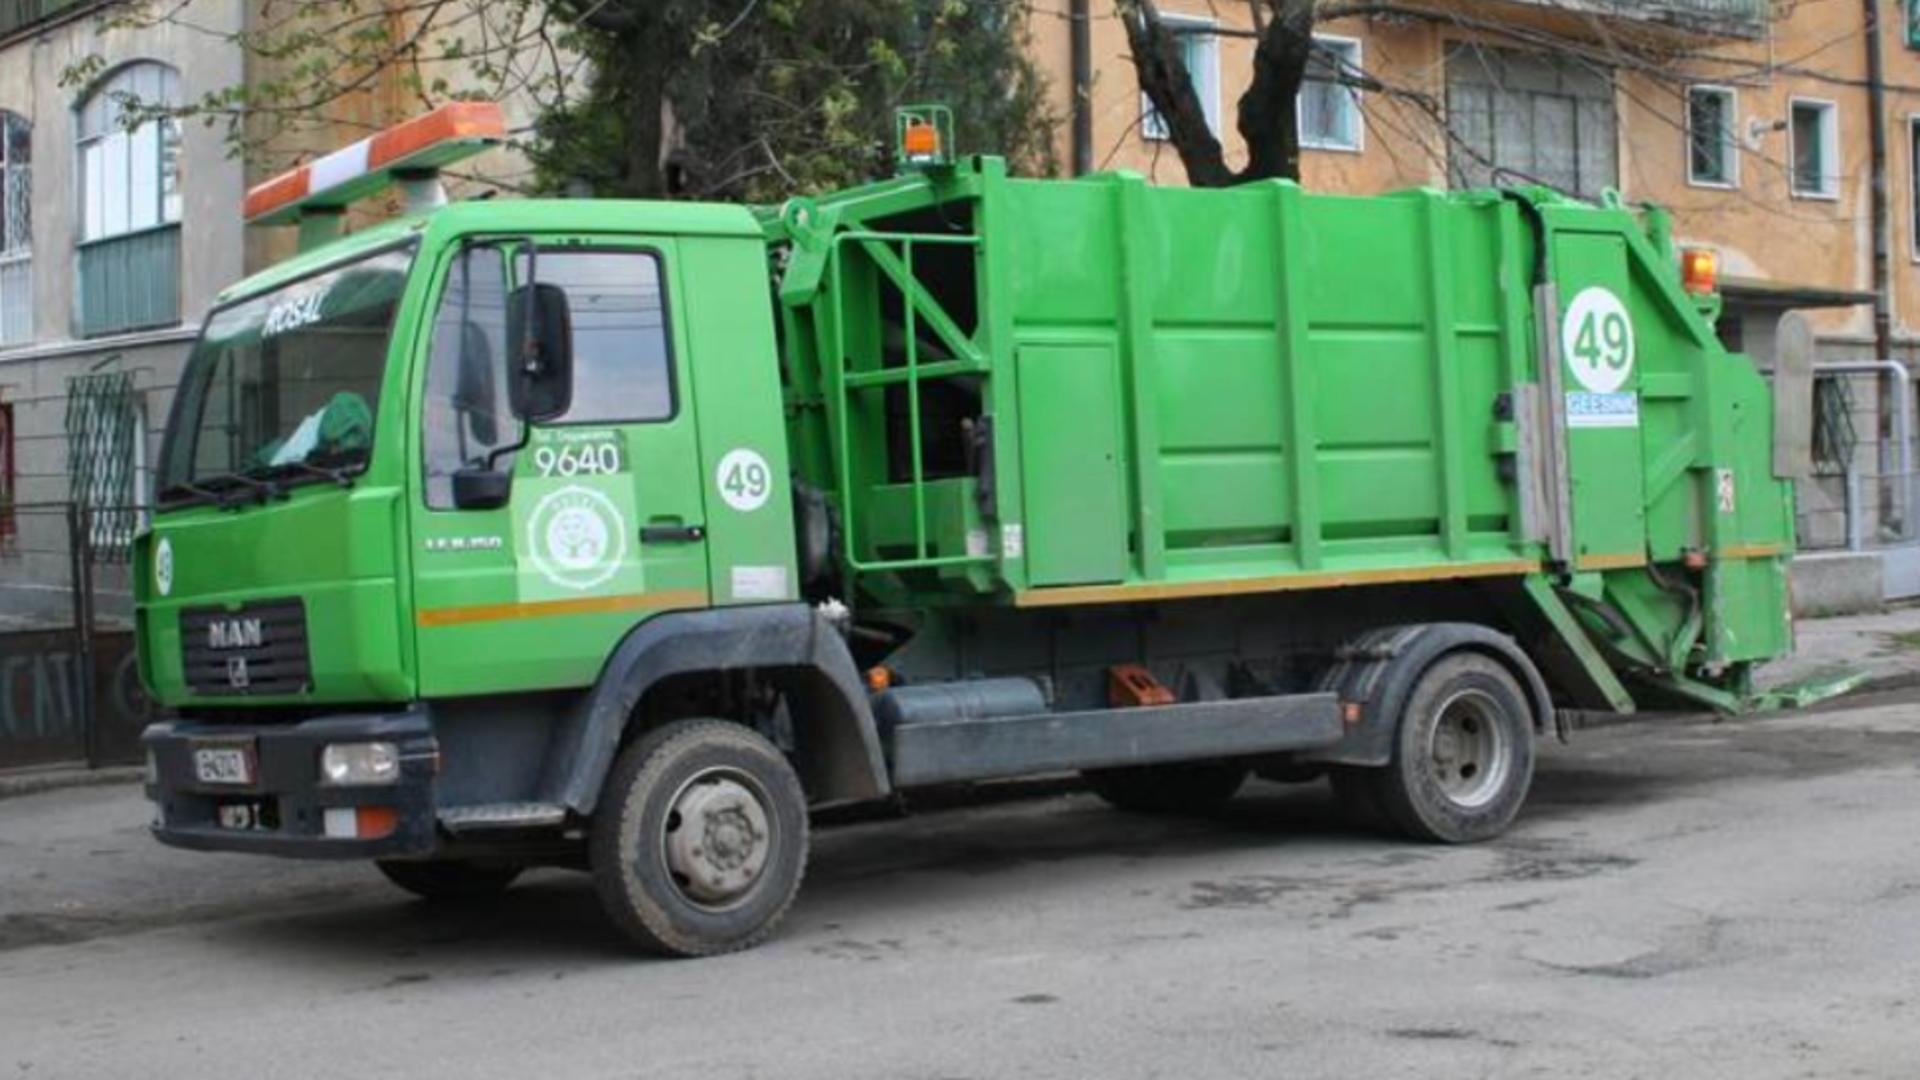 ADI Deșeuri Prahova, alba-neagra cu contractul ROSAL de colectare a deșeurilor menajere